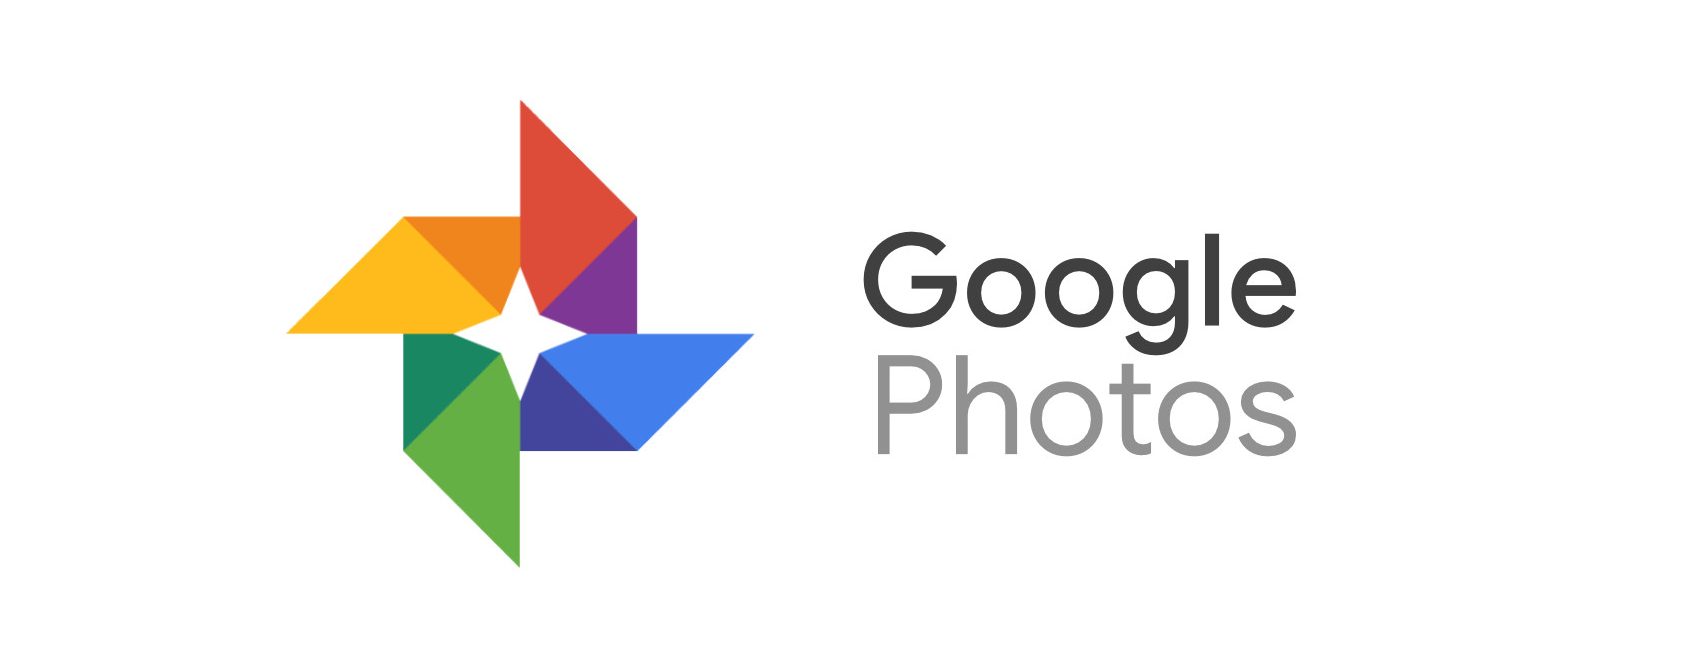 Абонаментната услуга на Google Photos Premium Print Series се възроди, за да използва алгоритми ML за избор на 10 най-добри изображения на месец